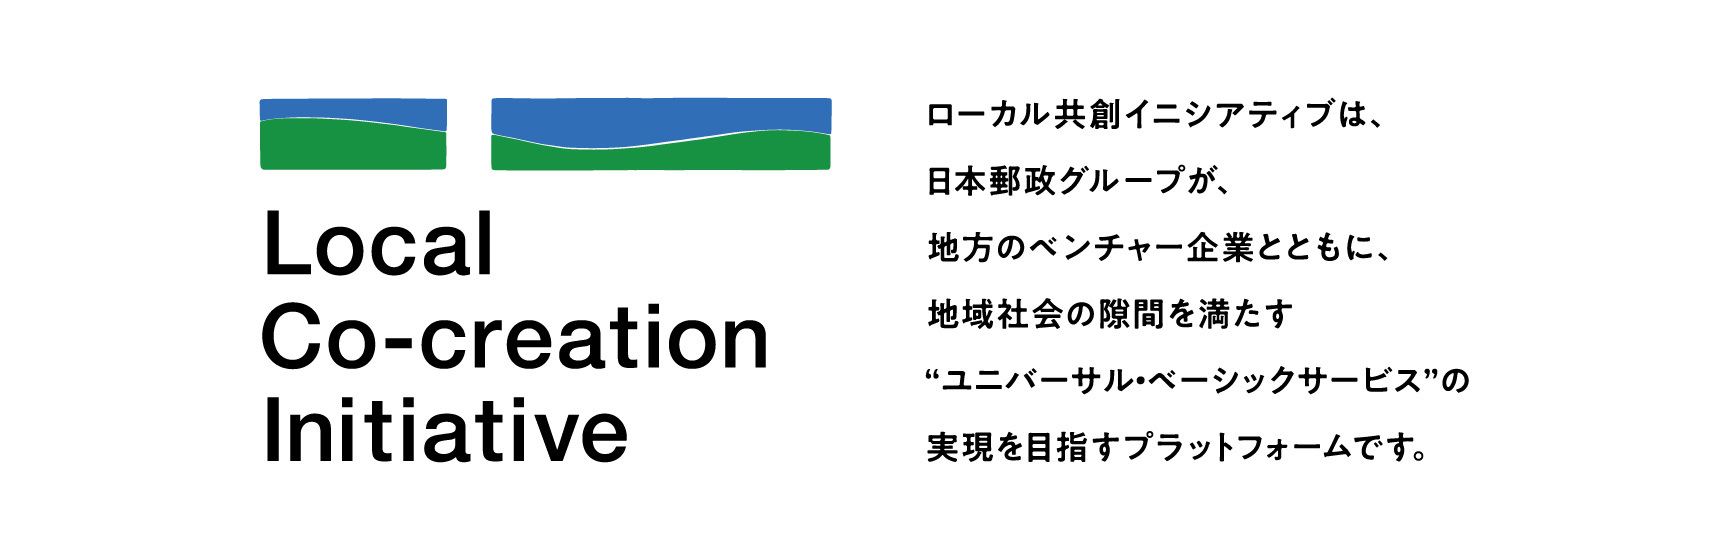 ローカル共創イニシアティブ ローカル共創イニシアティブは、日本郵政グループが、地方のベンチャー企業とともに、地域社会の隙間を満たす”ユニバーサル・ベーシックサービス”の実現を目指すプラットフォームです。